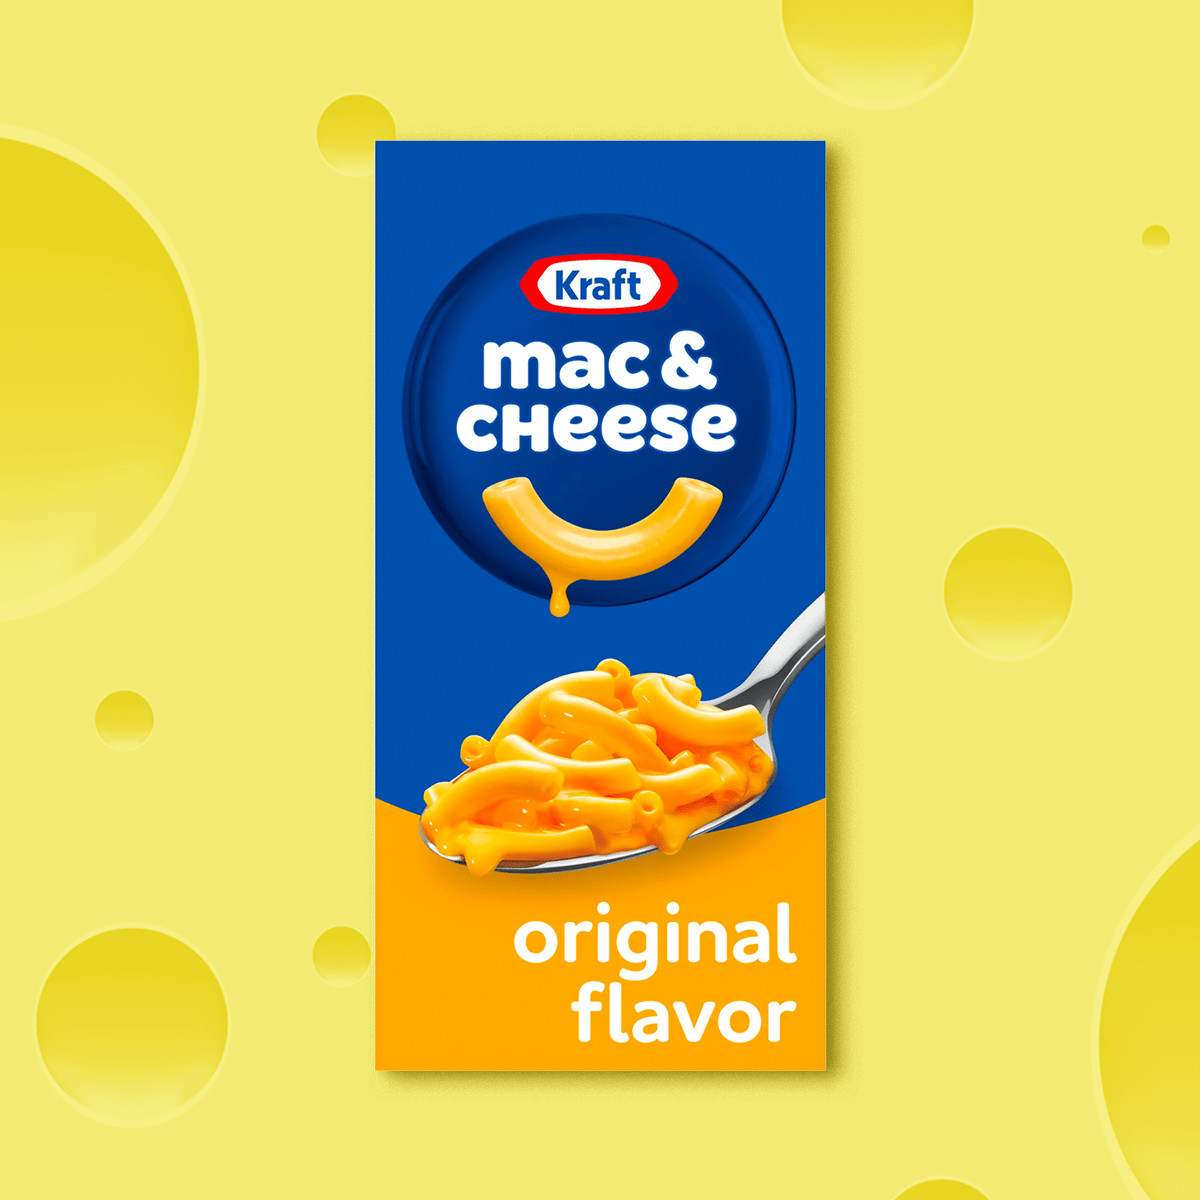  Kraft Original Mac & Cheese Macaroni and Cheese